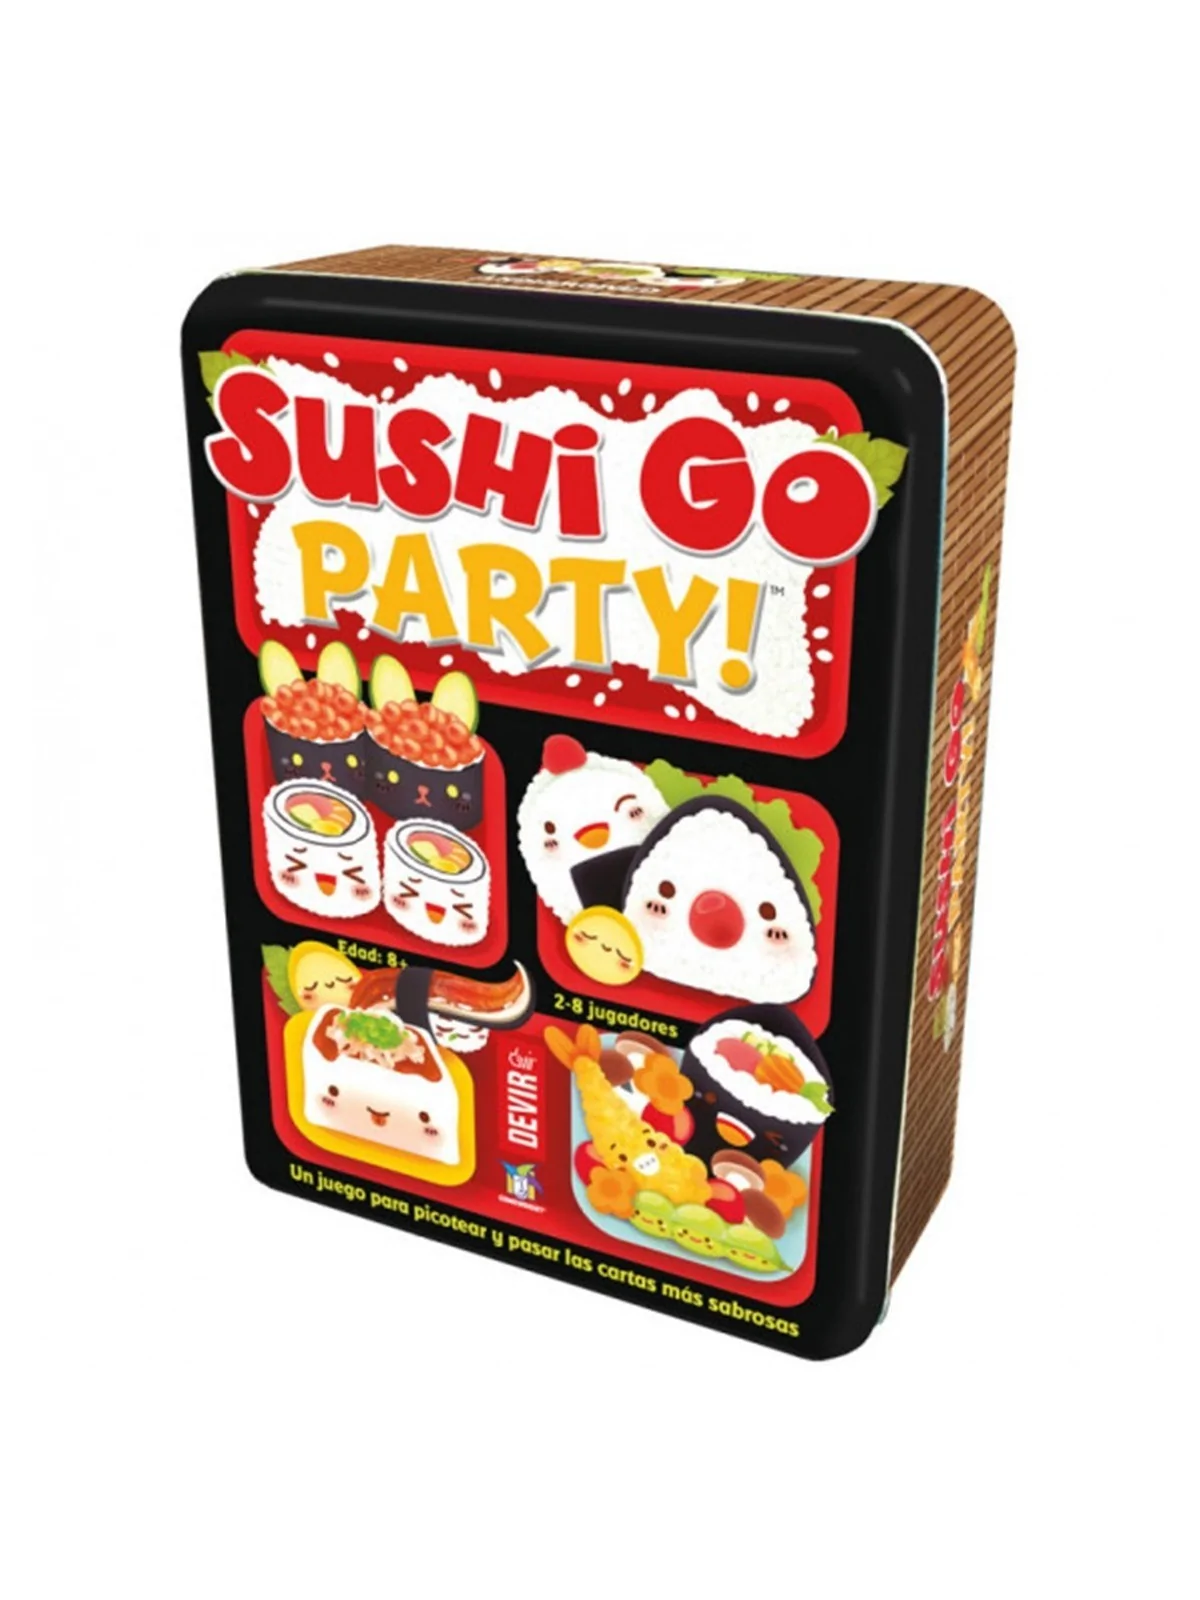 Comprar Juego mesa devir sushi go party barato al mejor precio 21,24 €